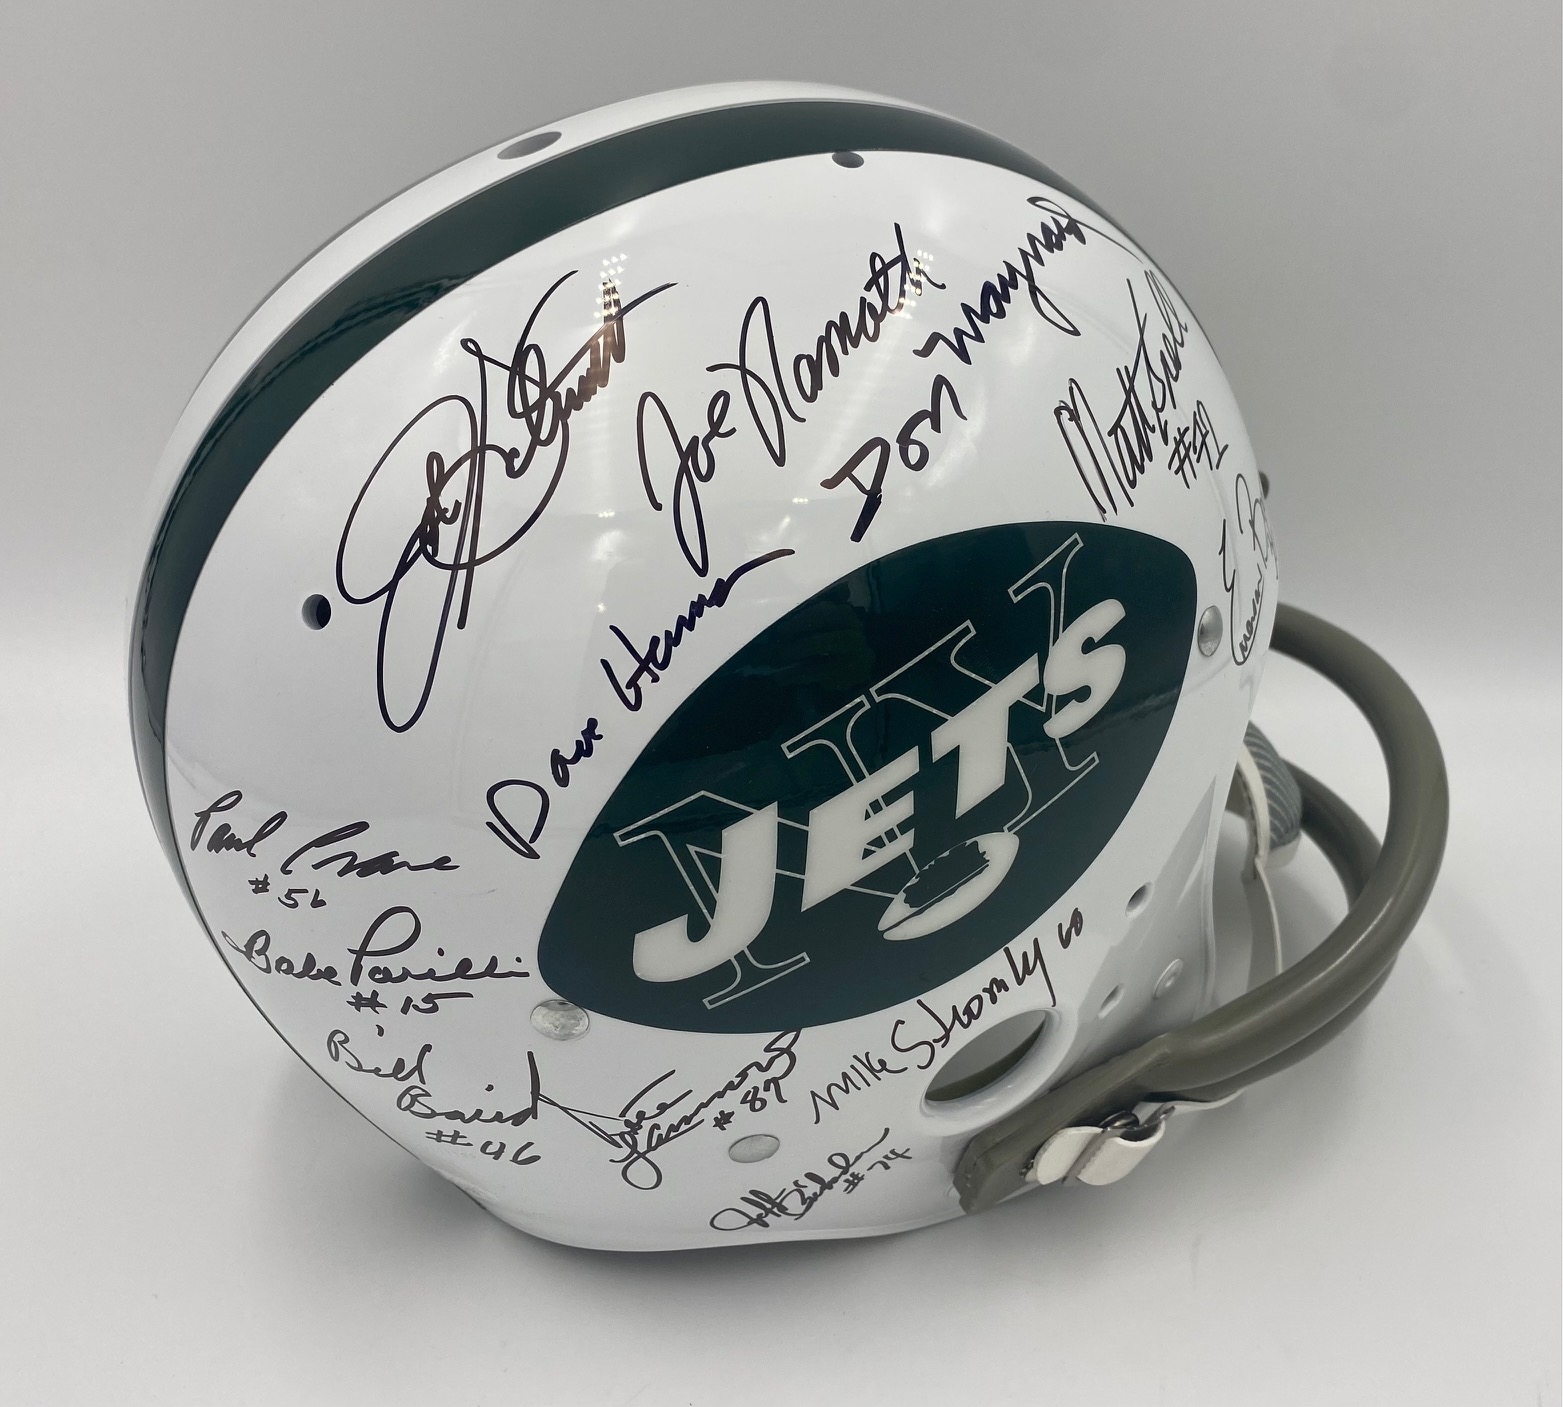 1969 New York Jets 24 Player Team Signed Full Size NFL Football Helmet - JSA